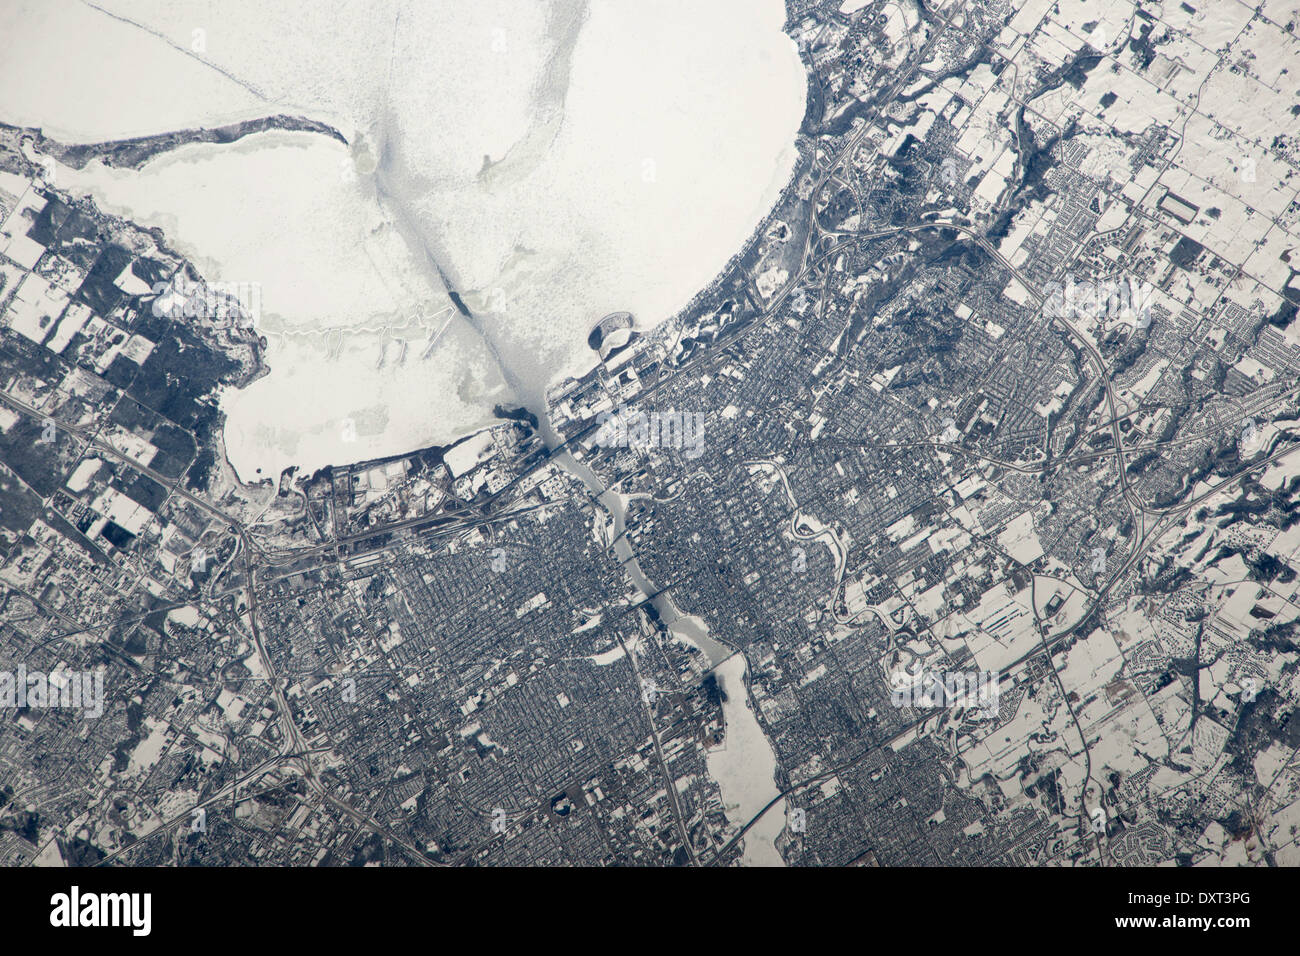 Ciudad de Green Bay, Wisconsin, en el extremo sur de icebound Green Bay, una cuenca del Lago Michigan. Foto de stock